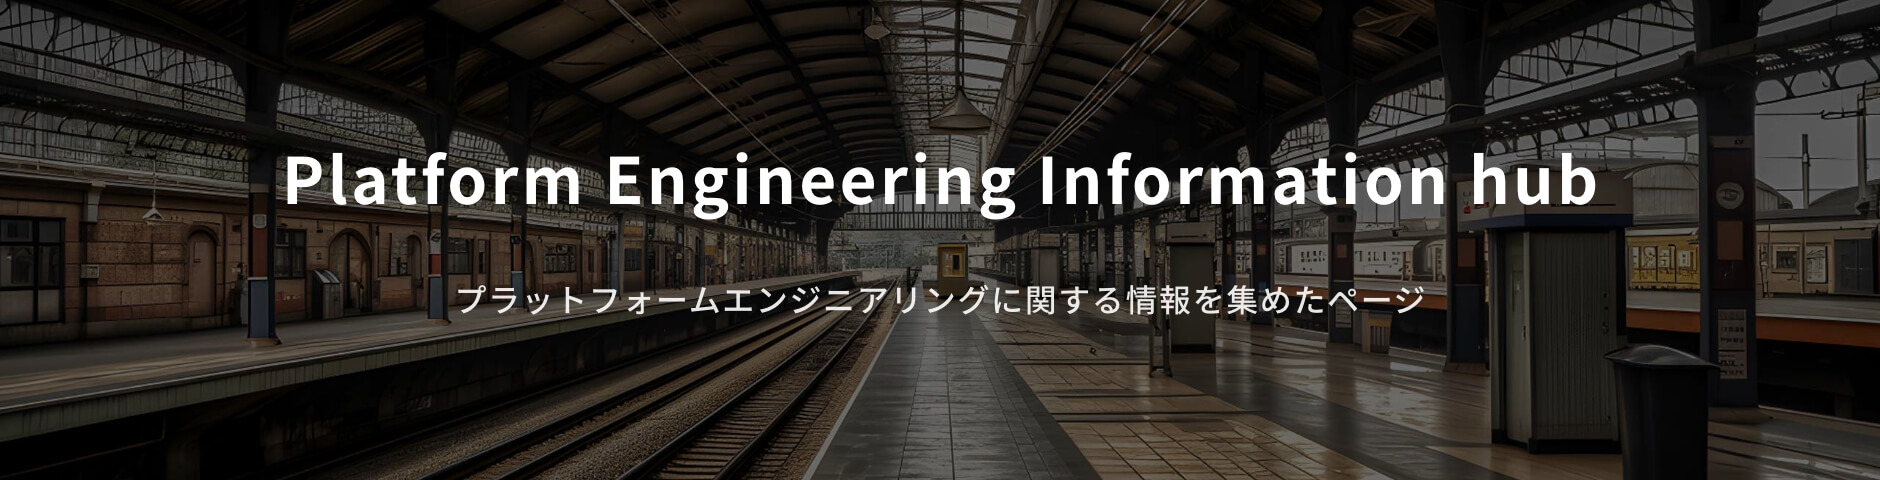 プラットフォームエンジニアリング Information hub